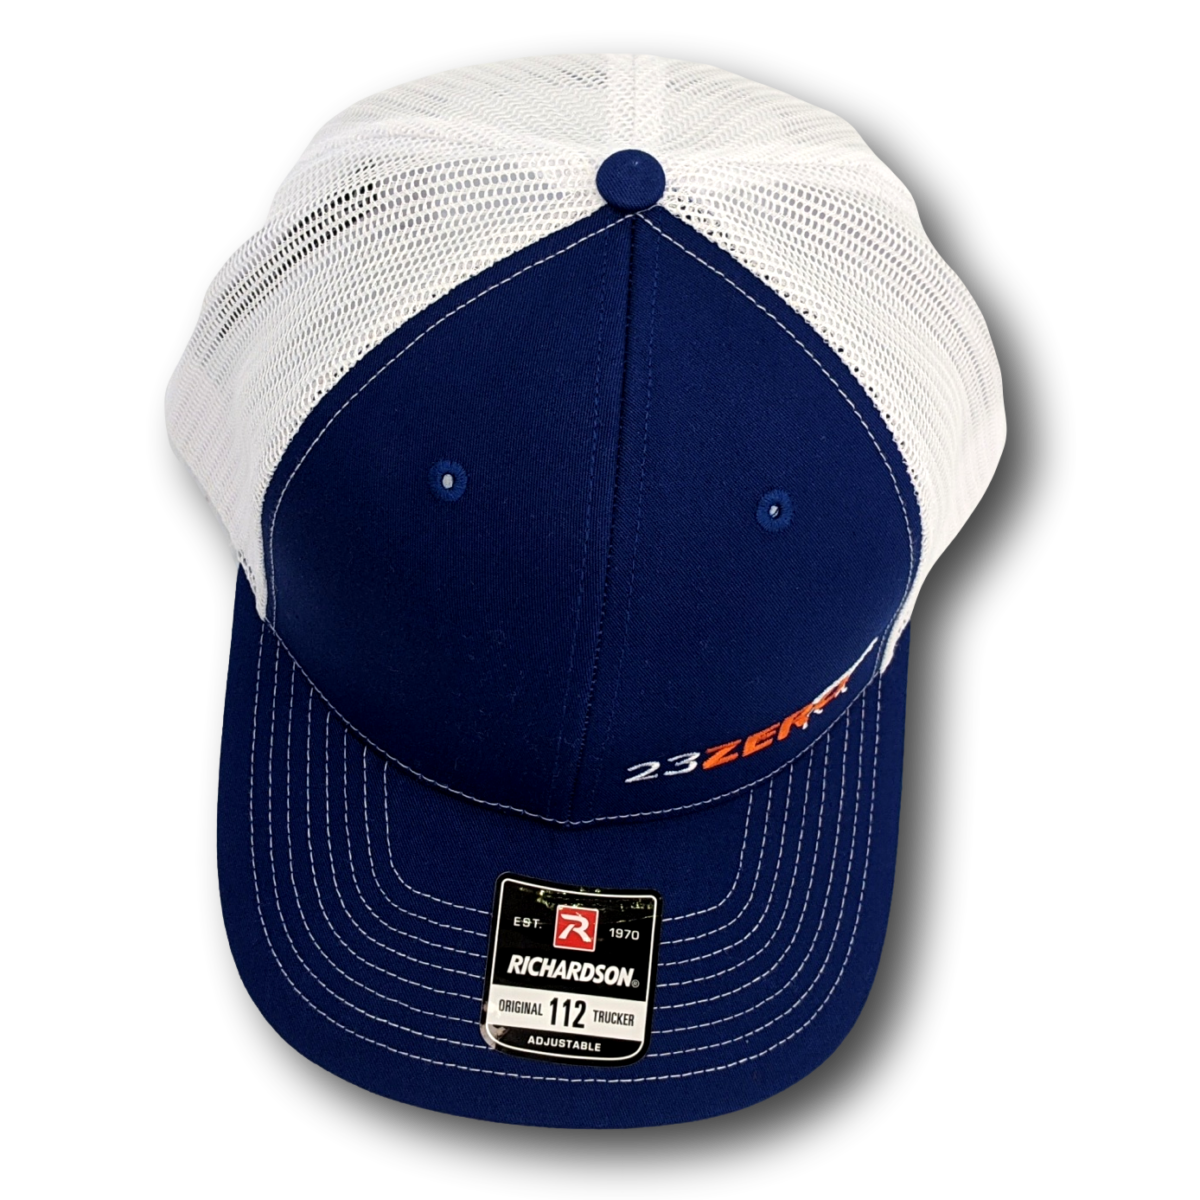 OL Blue - Trucker Hat Royal Blue / White